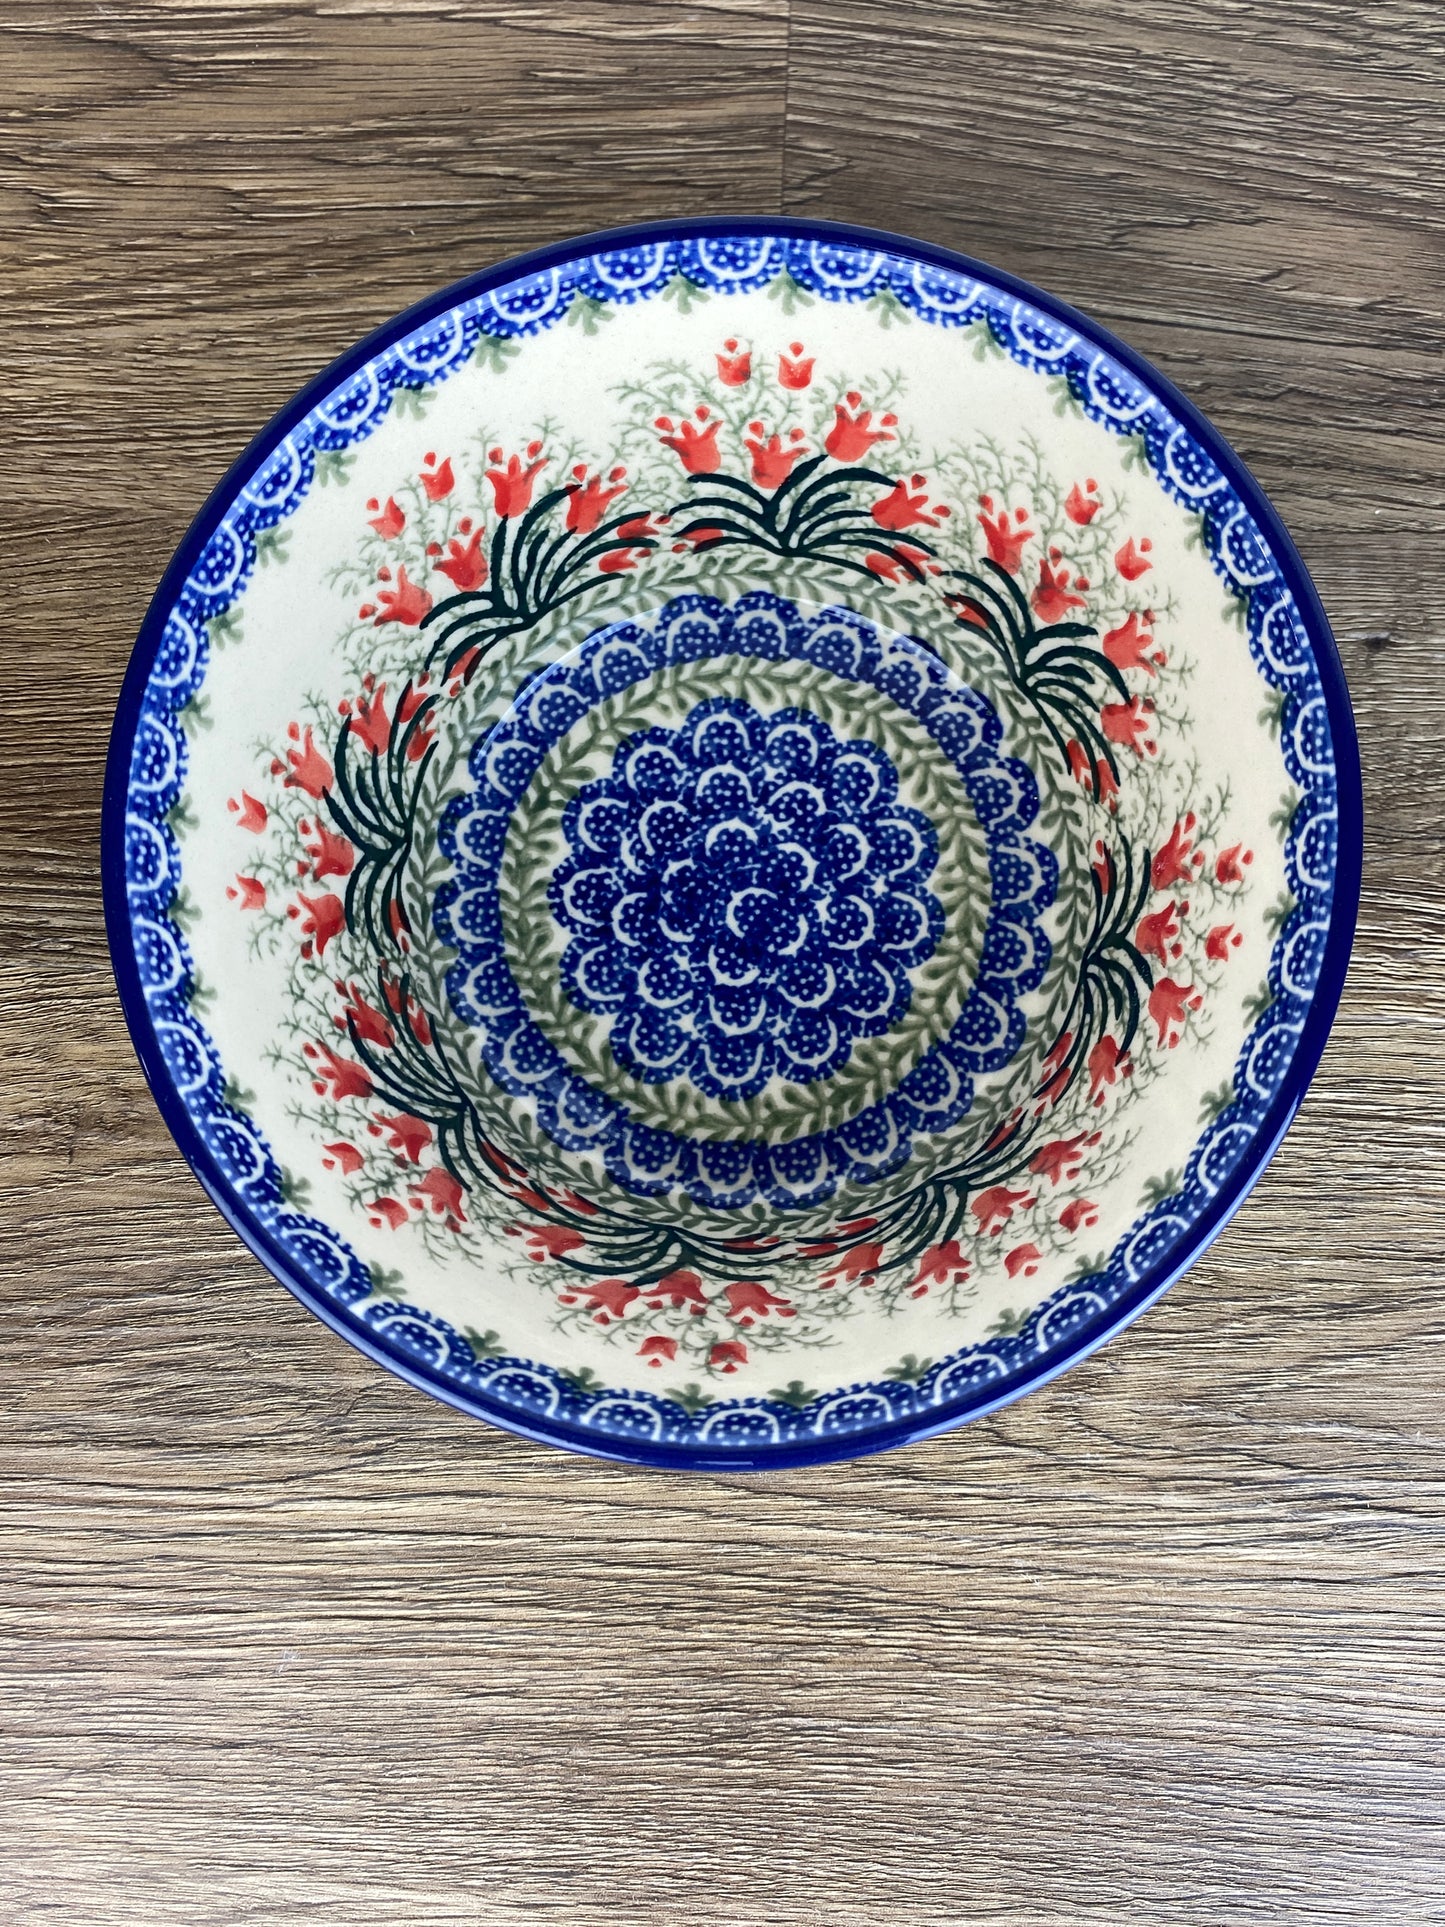 Medium Bowl - Shape E97 - Pattern 1437